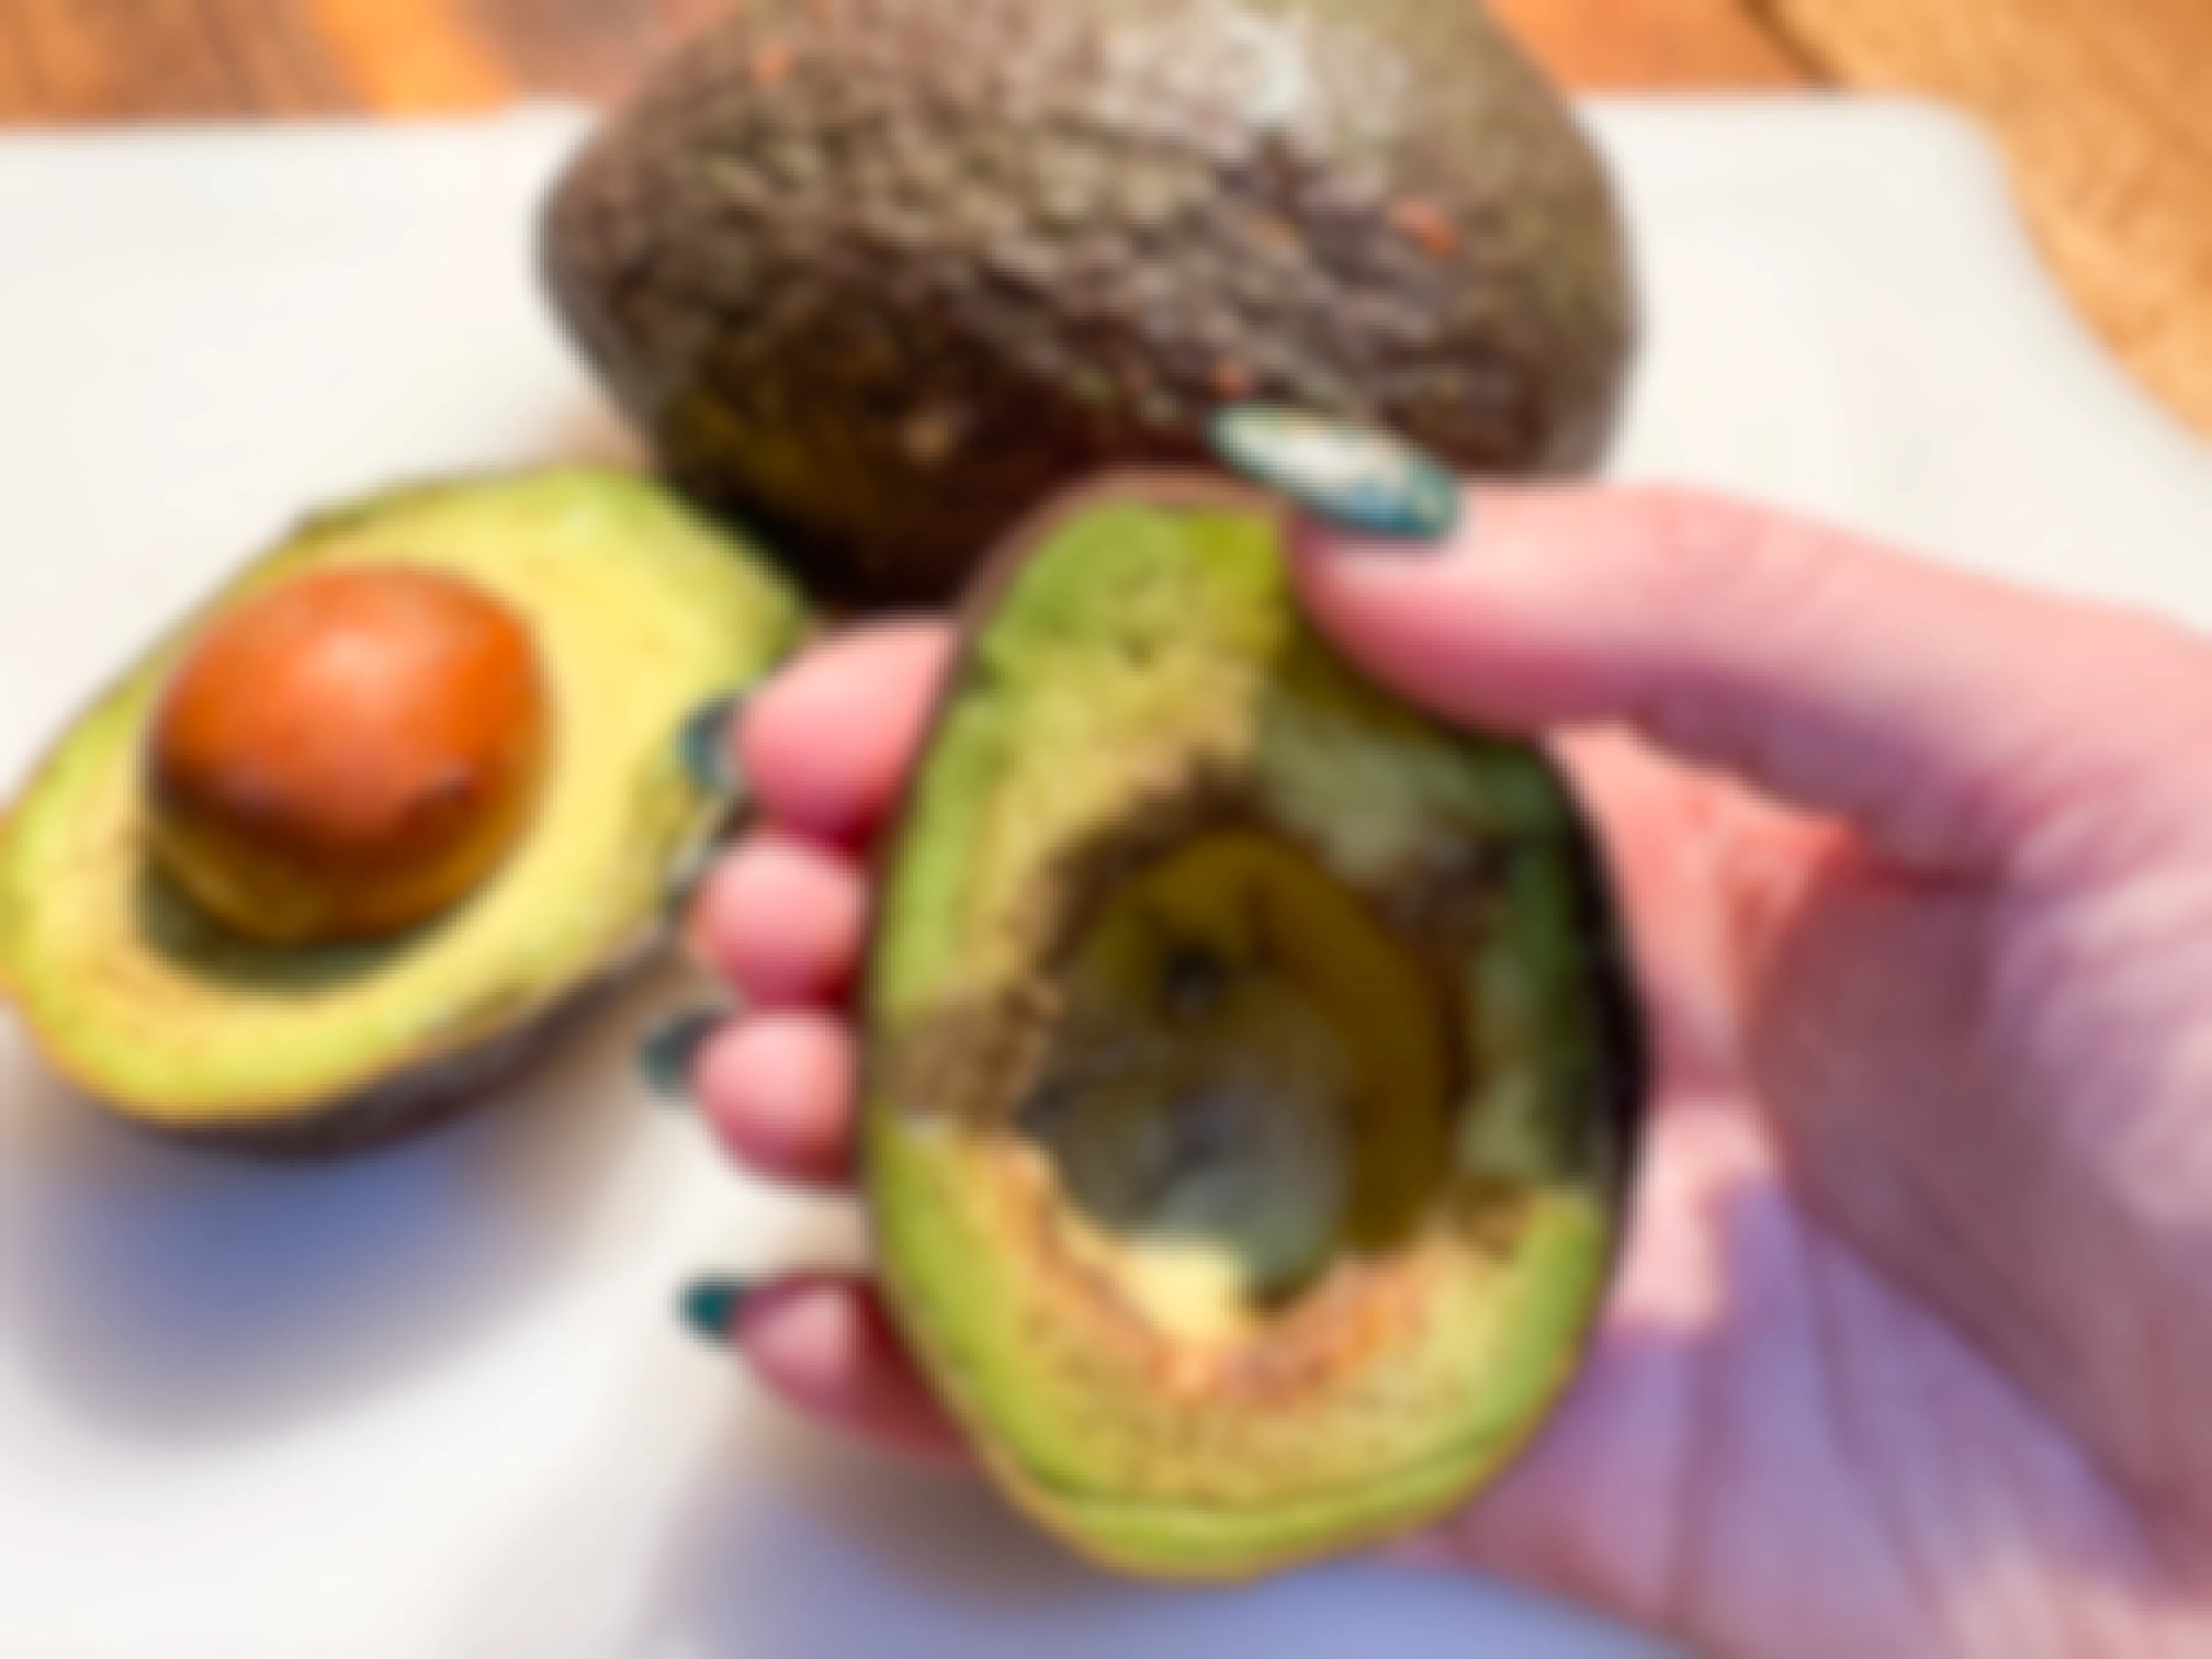 hand holding overripe avocado